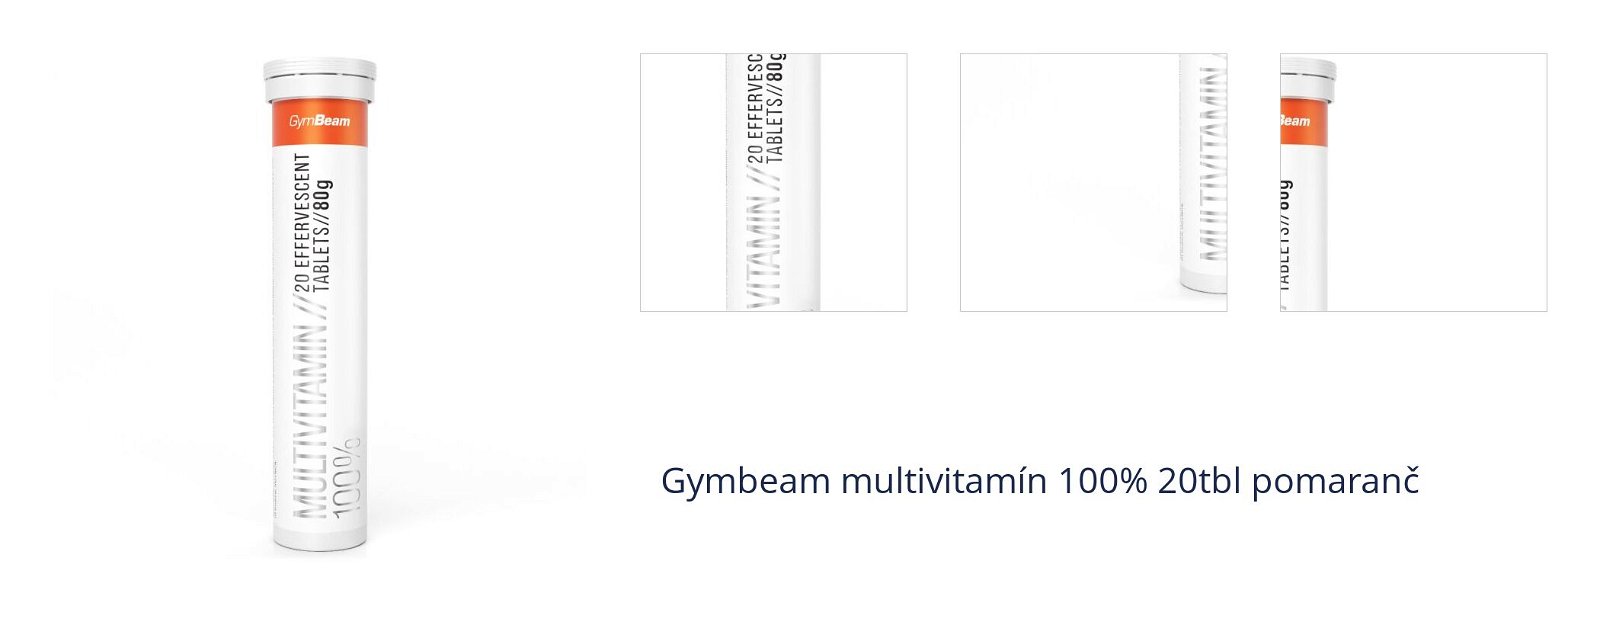 Gymbeam multivitamín 100% 20tbl pomaranč 1